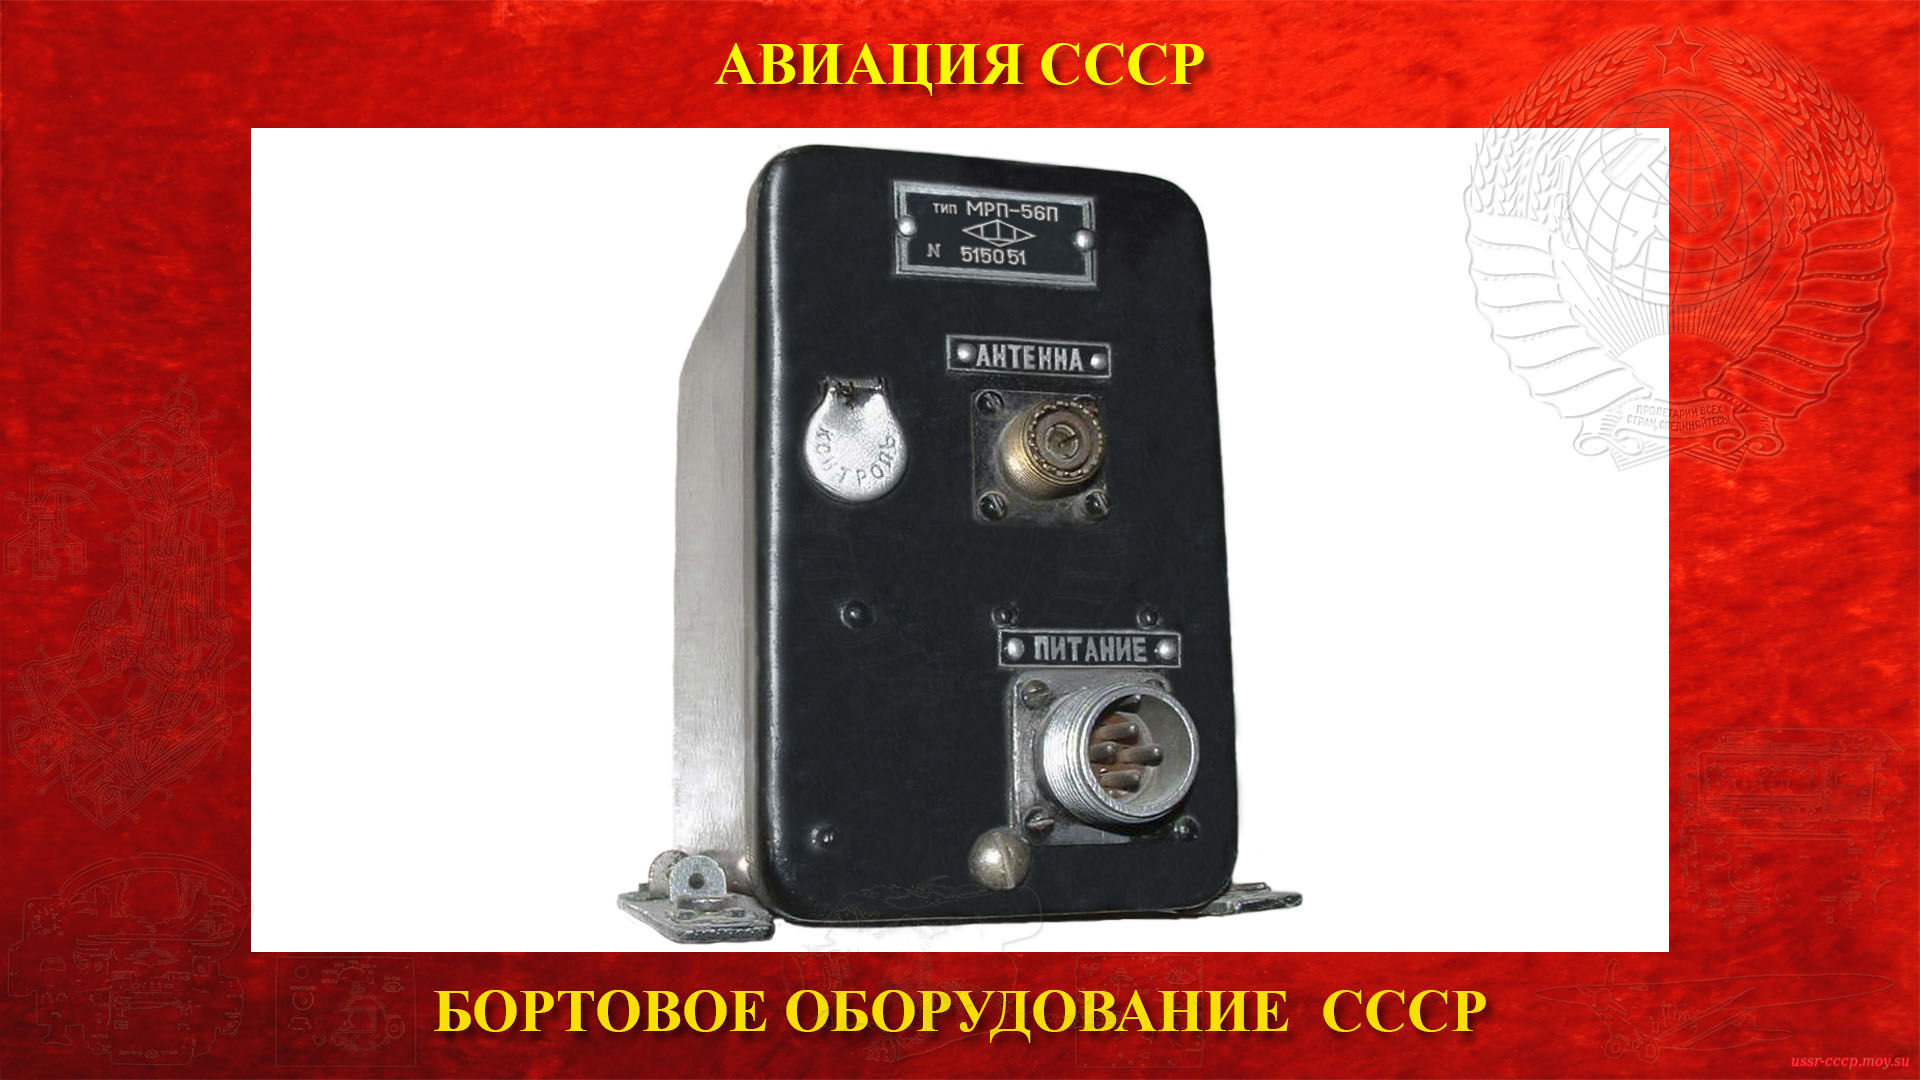 Маркерный радиоприёмник МРП-56П (повествование)